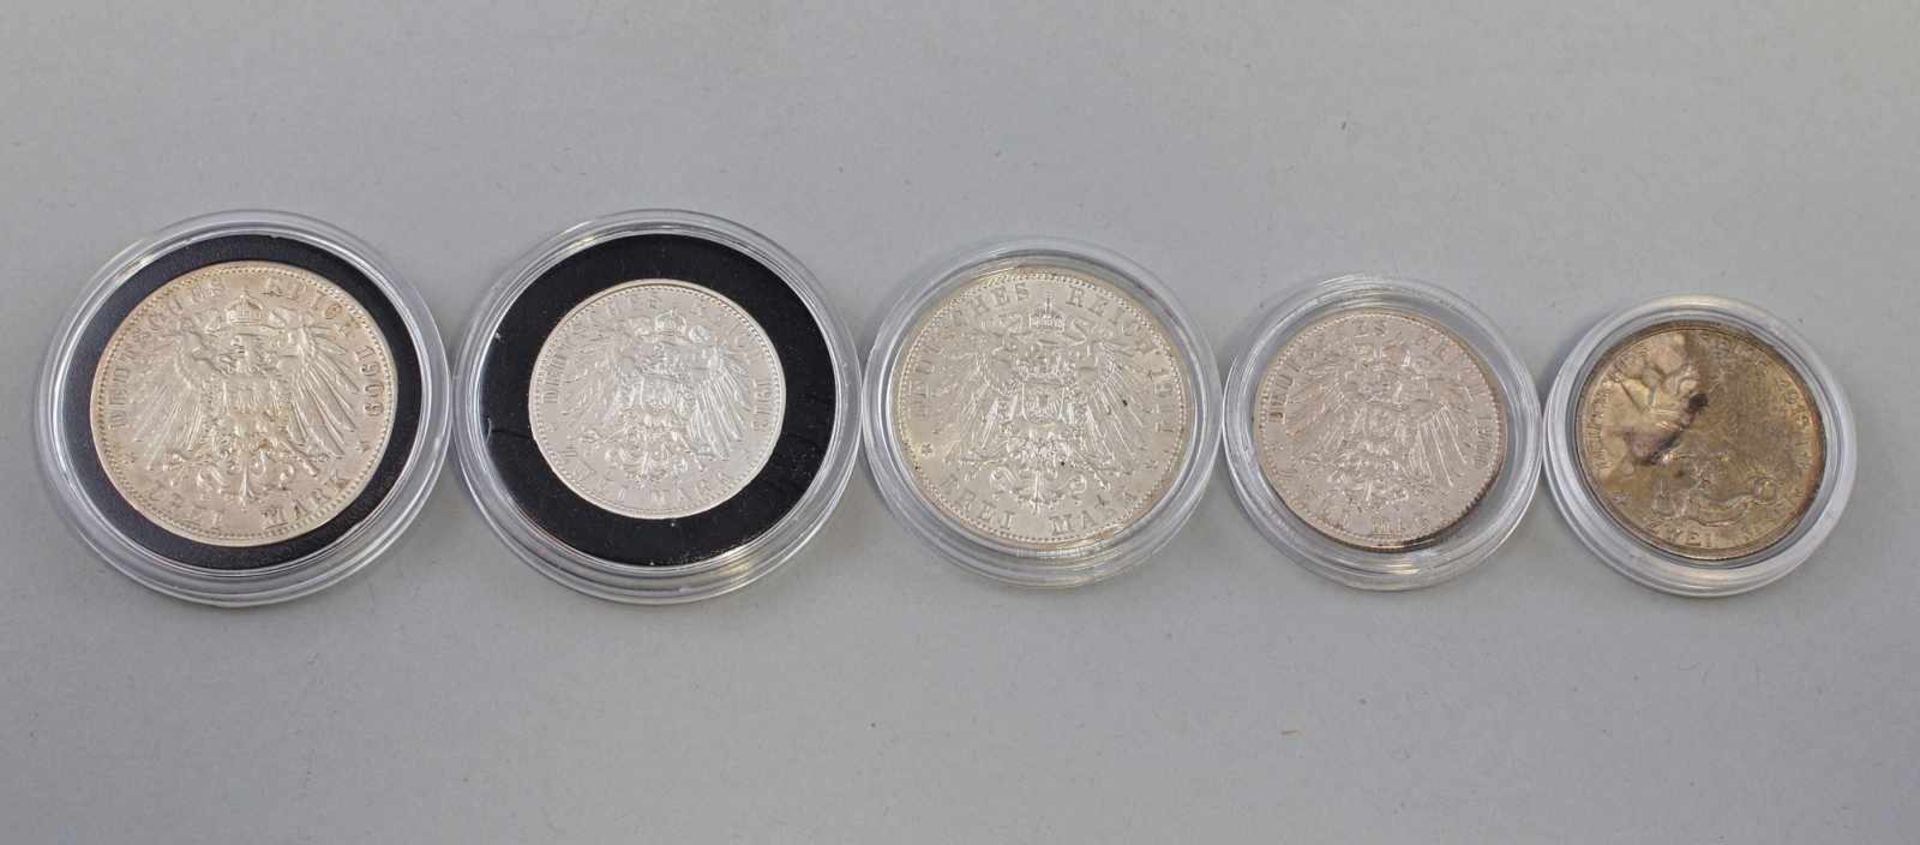 5 Silber-Münzen Deutsches Reich Preussen 1900-1914dabei 3 x 2 Mark 1900, 2 x 1913 und 2 x 3 Mark - Image 2 of 2